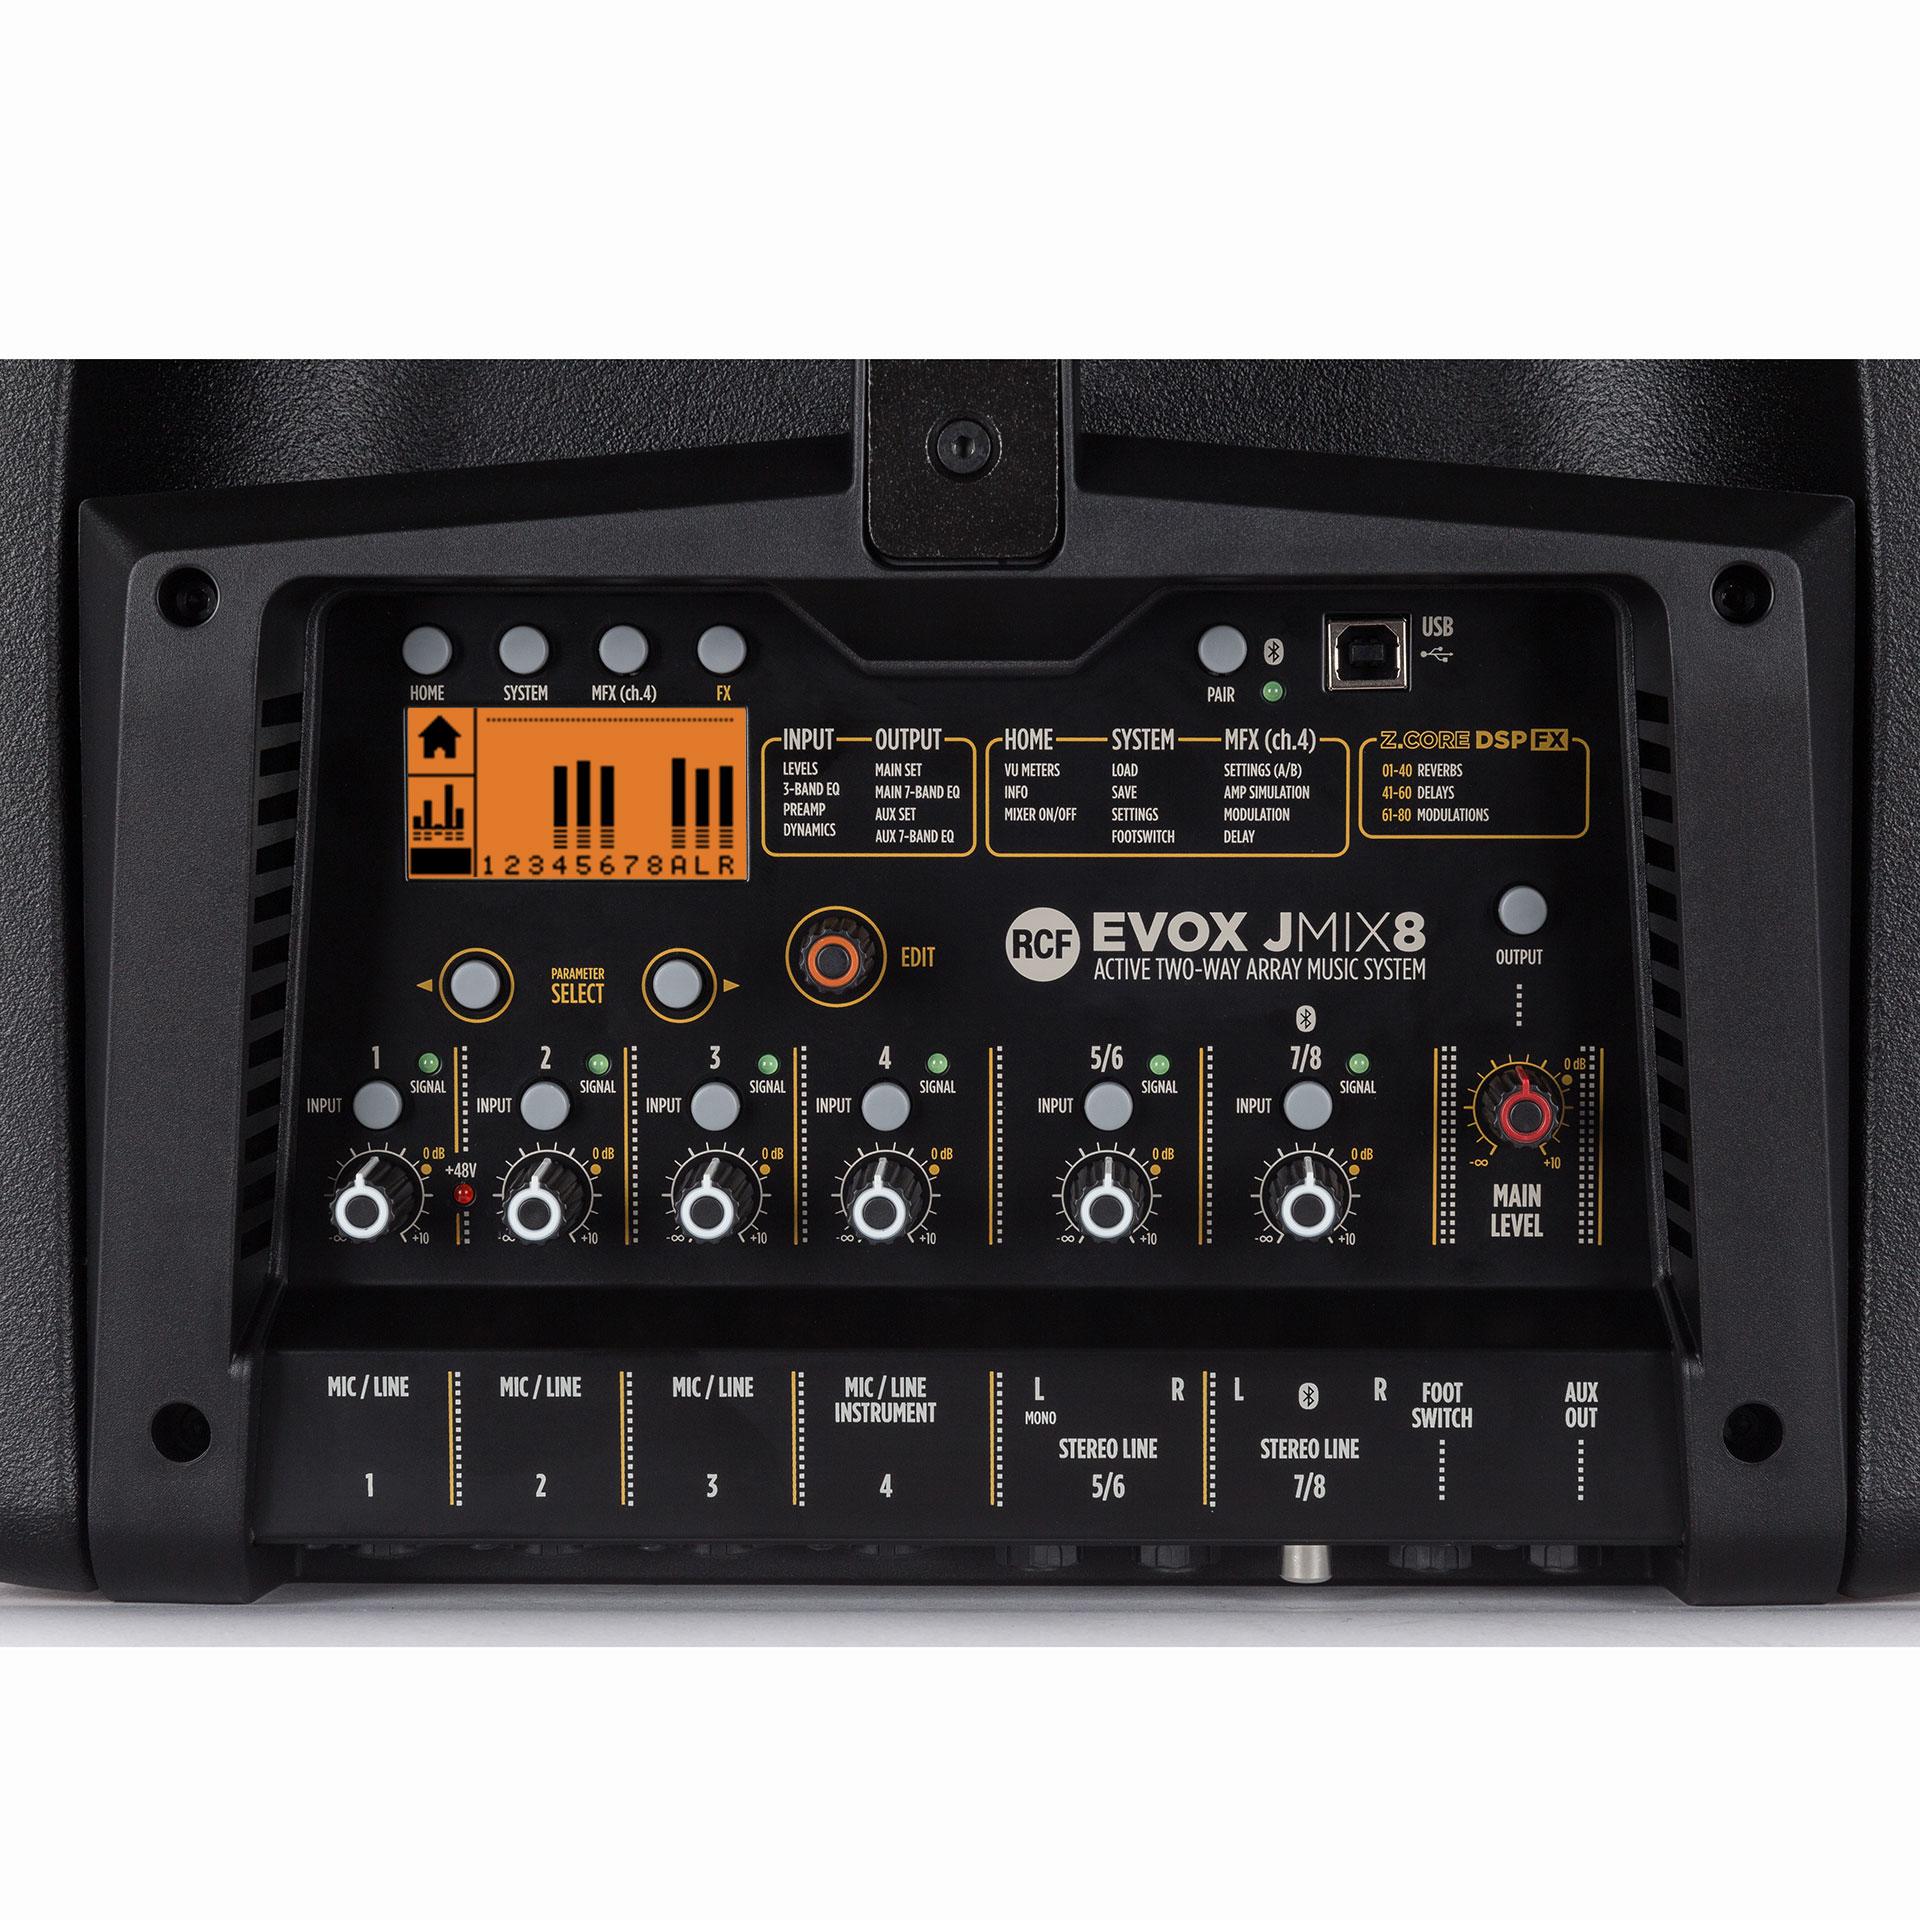 RCF Evox JMIX8 mixer details